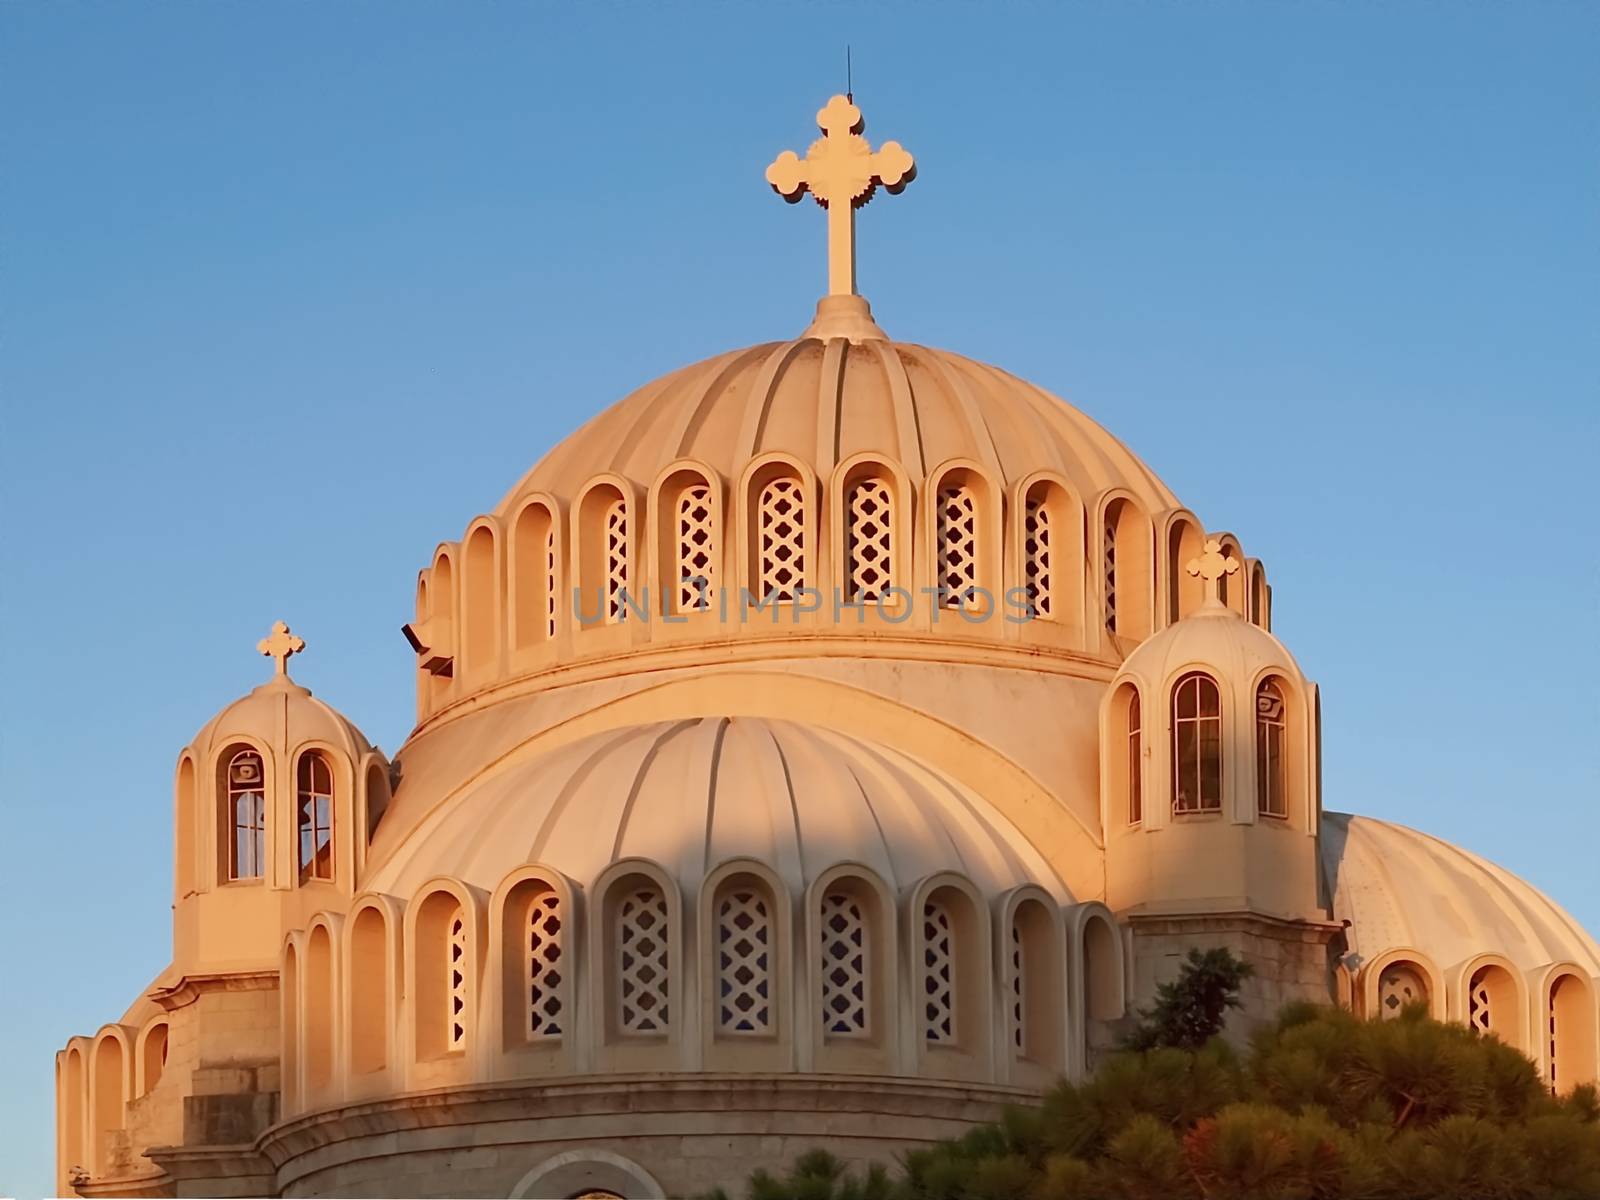 Beautiful church in Athens in Greece by Stimmungsbilder